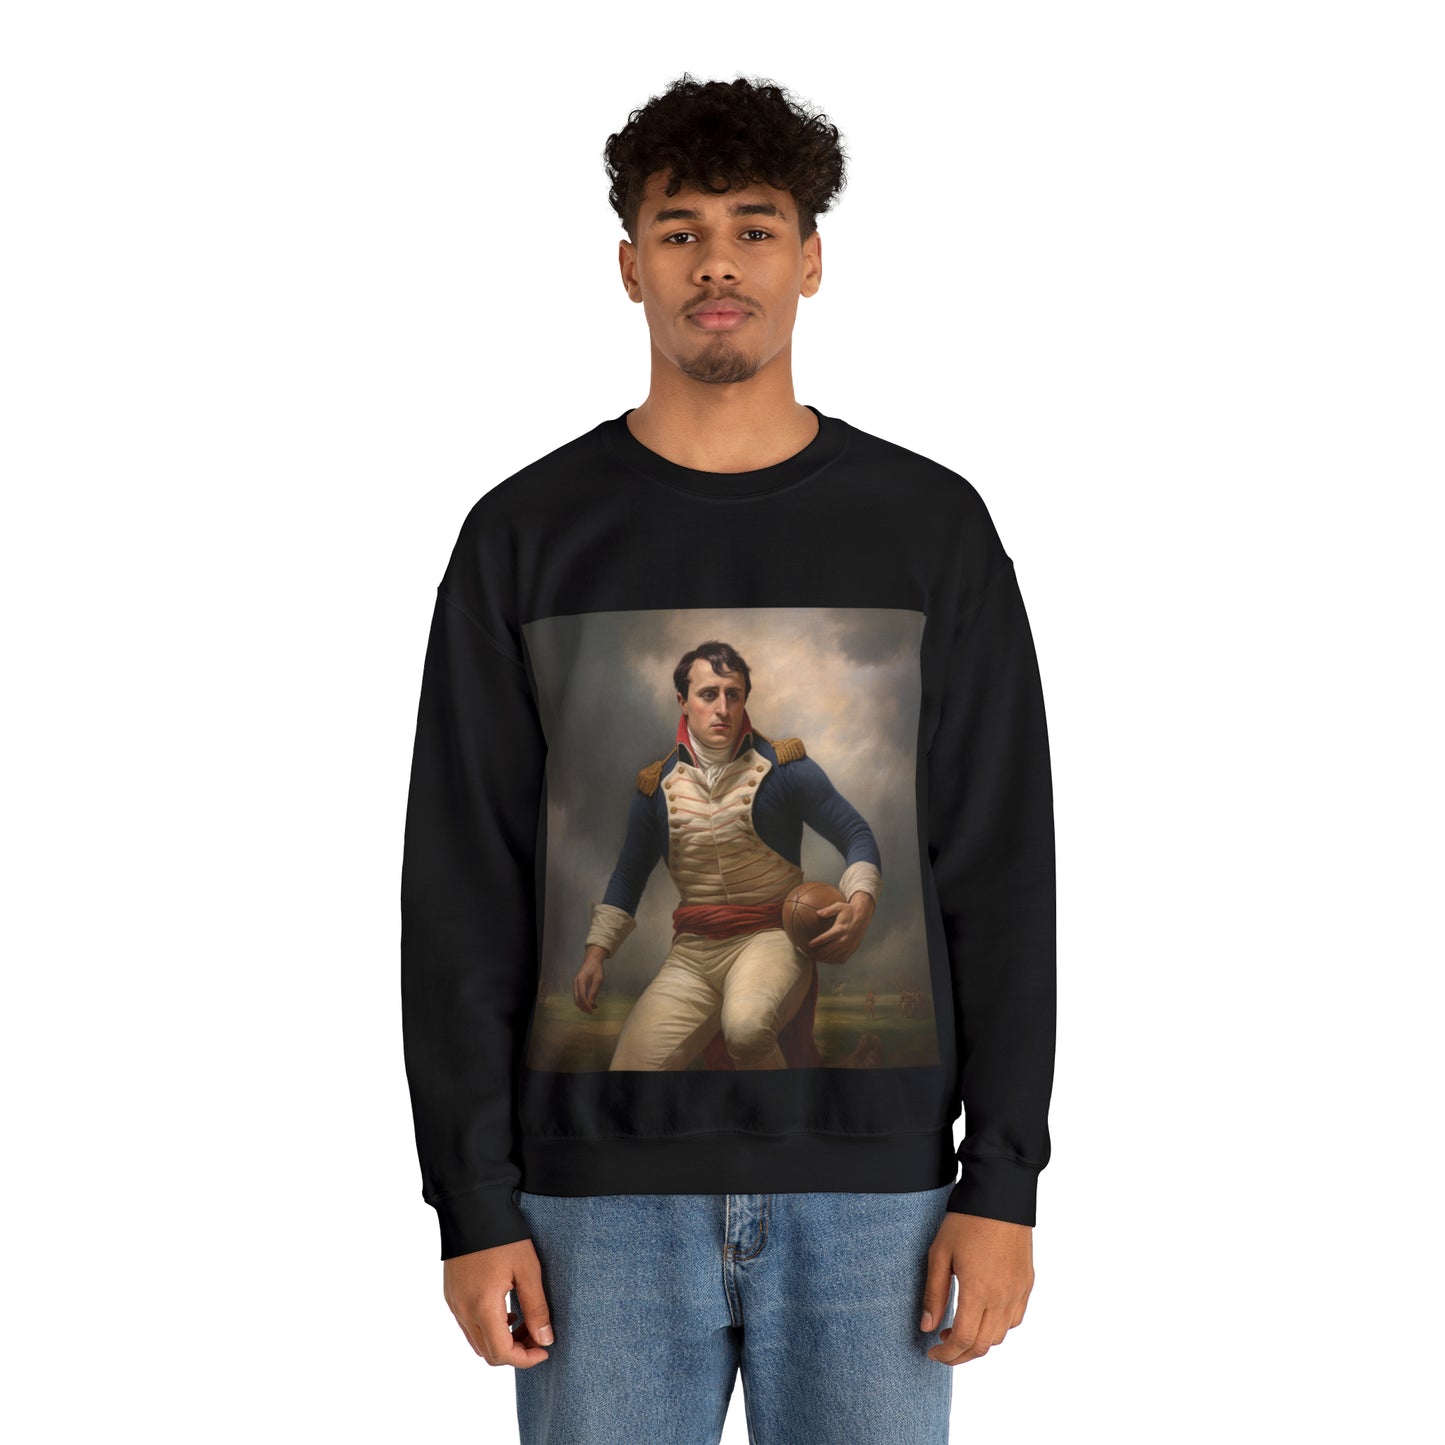 Napoleon Rugby - black sweatshirt